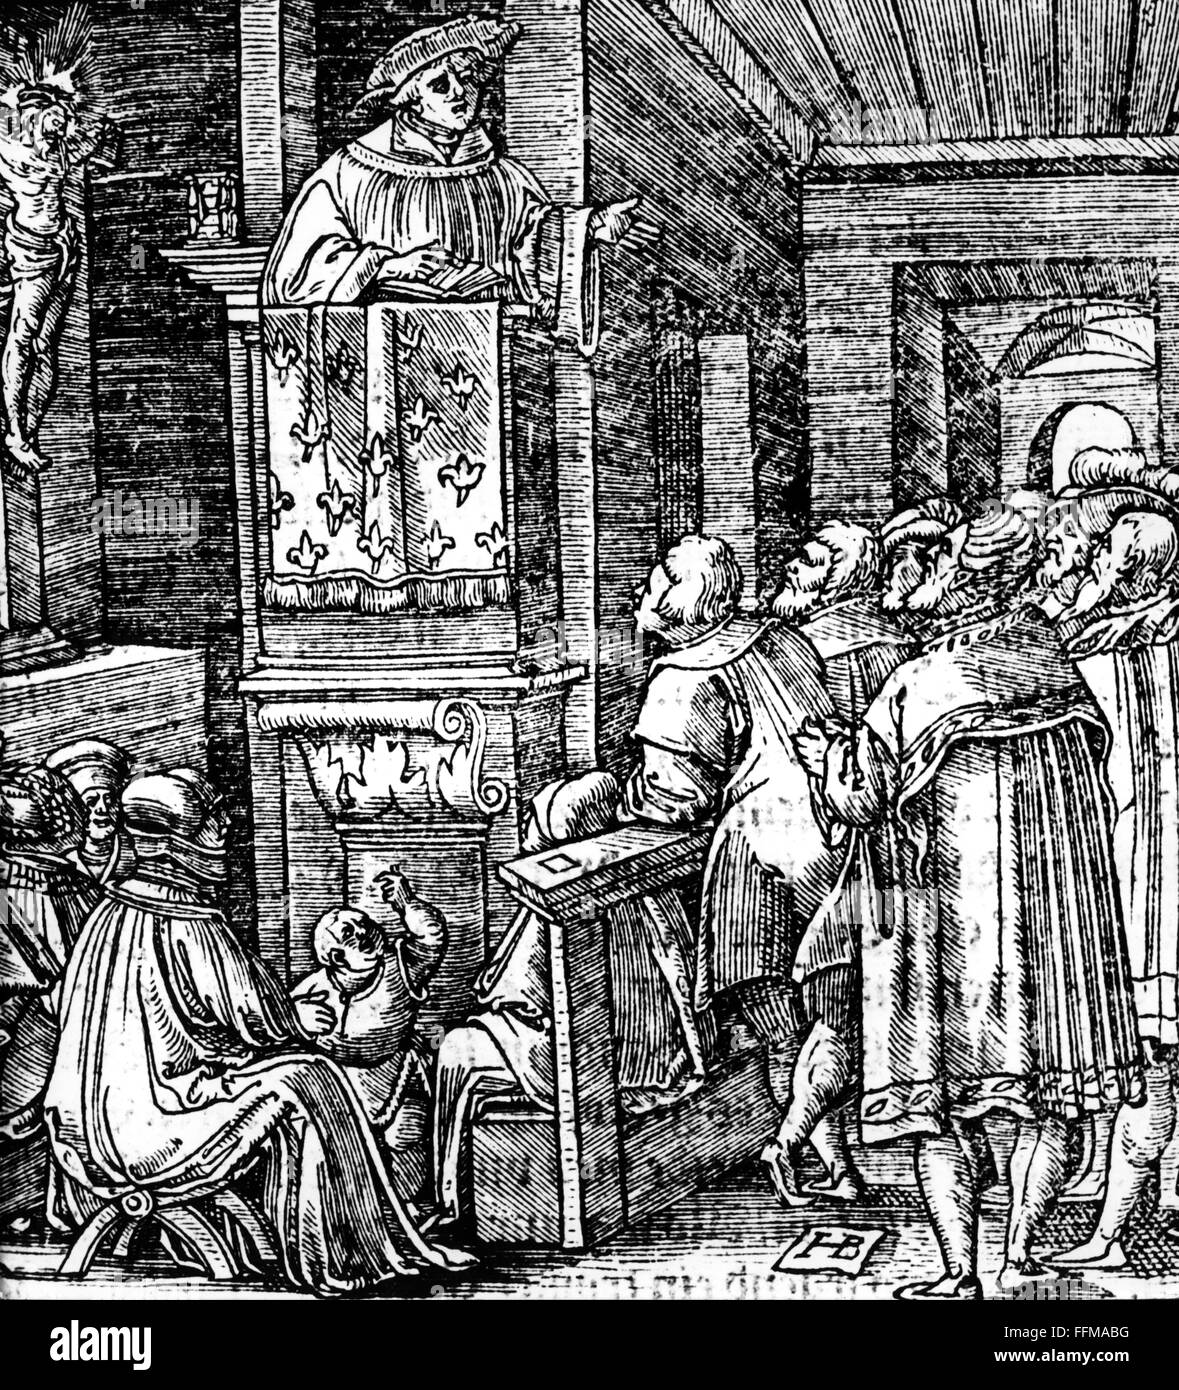 Lutero, Martin, 10.11.1483 - 18.2.1546, riformatore tedesco, predicando in una chiesa, legno, circa 1530, , Foto Stock